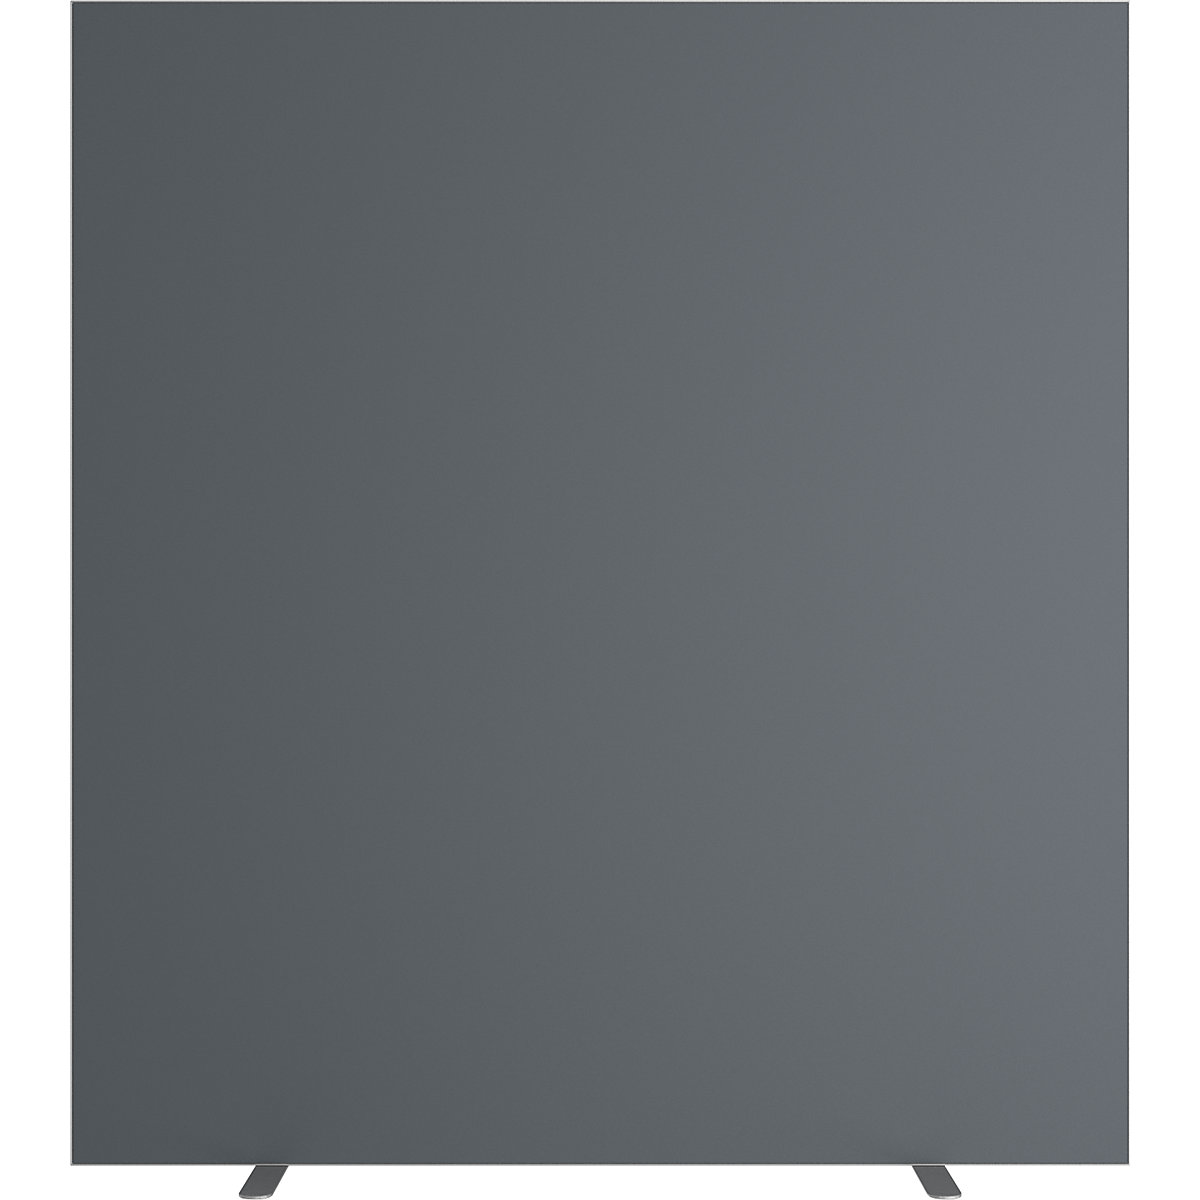 Ścianka działowa easyScreen, jednokolorowa, antracytowa, szer. 1600 mm-4